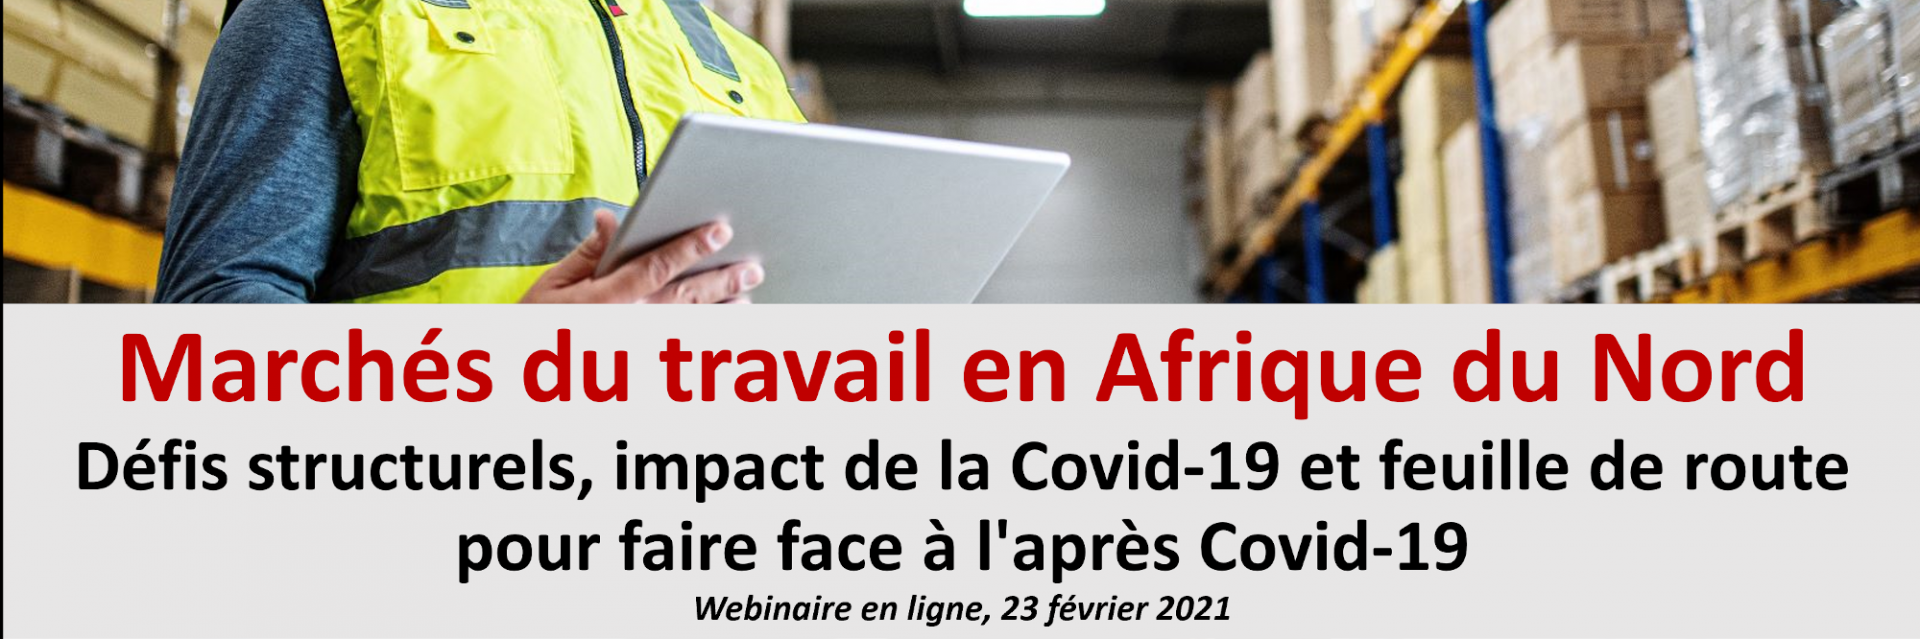 Marchés du travail en Afrique du Nord : défis structurels, impact du COVID-19 et feuille de route pour faire face à l'après COVID-19